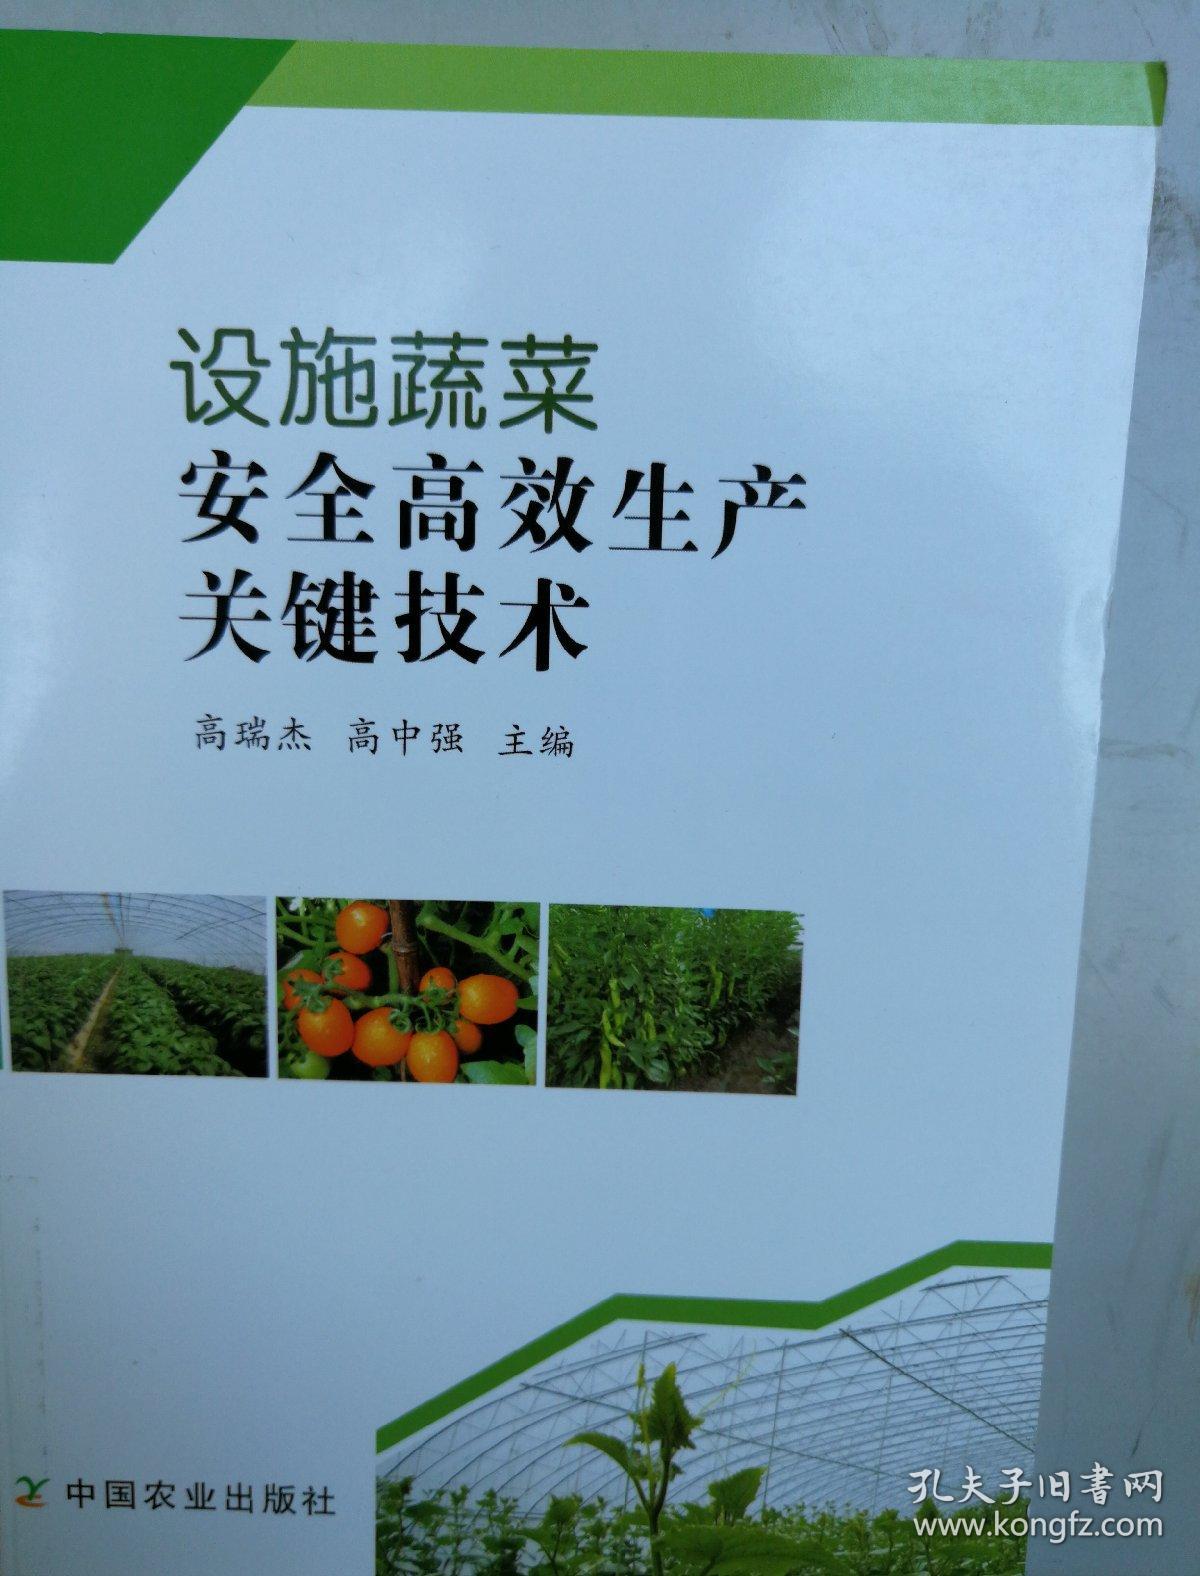 设施蔬菜安全高效生产关键技术